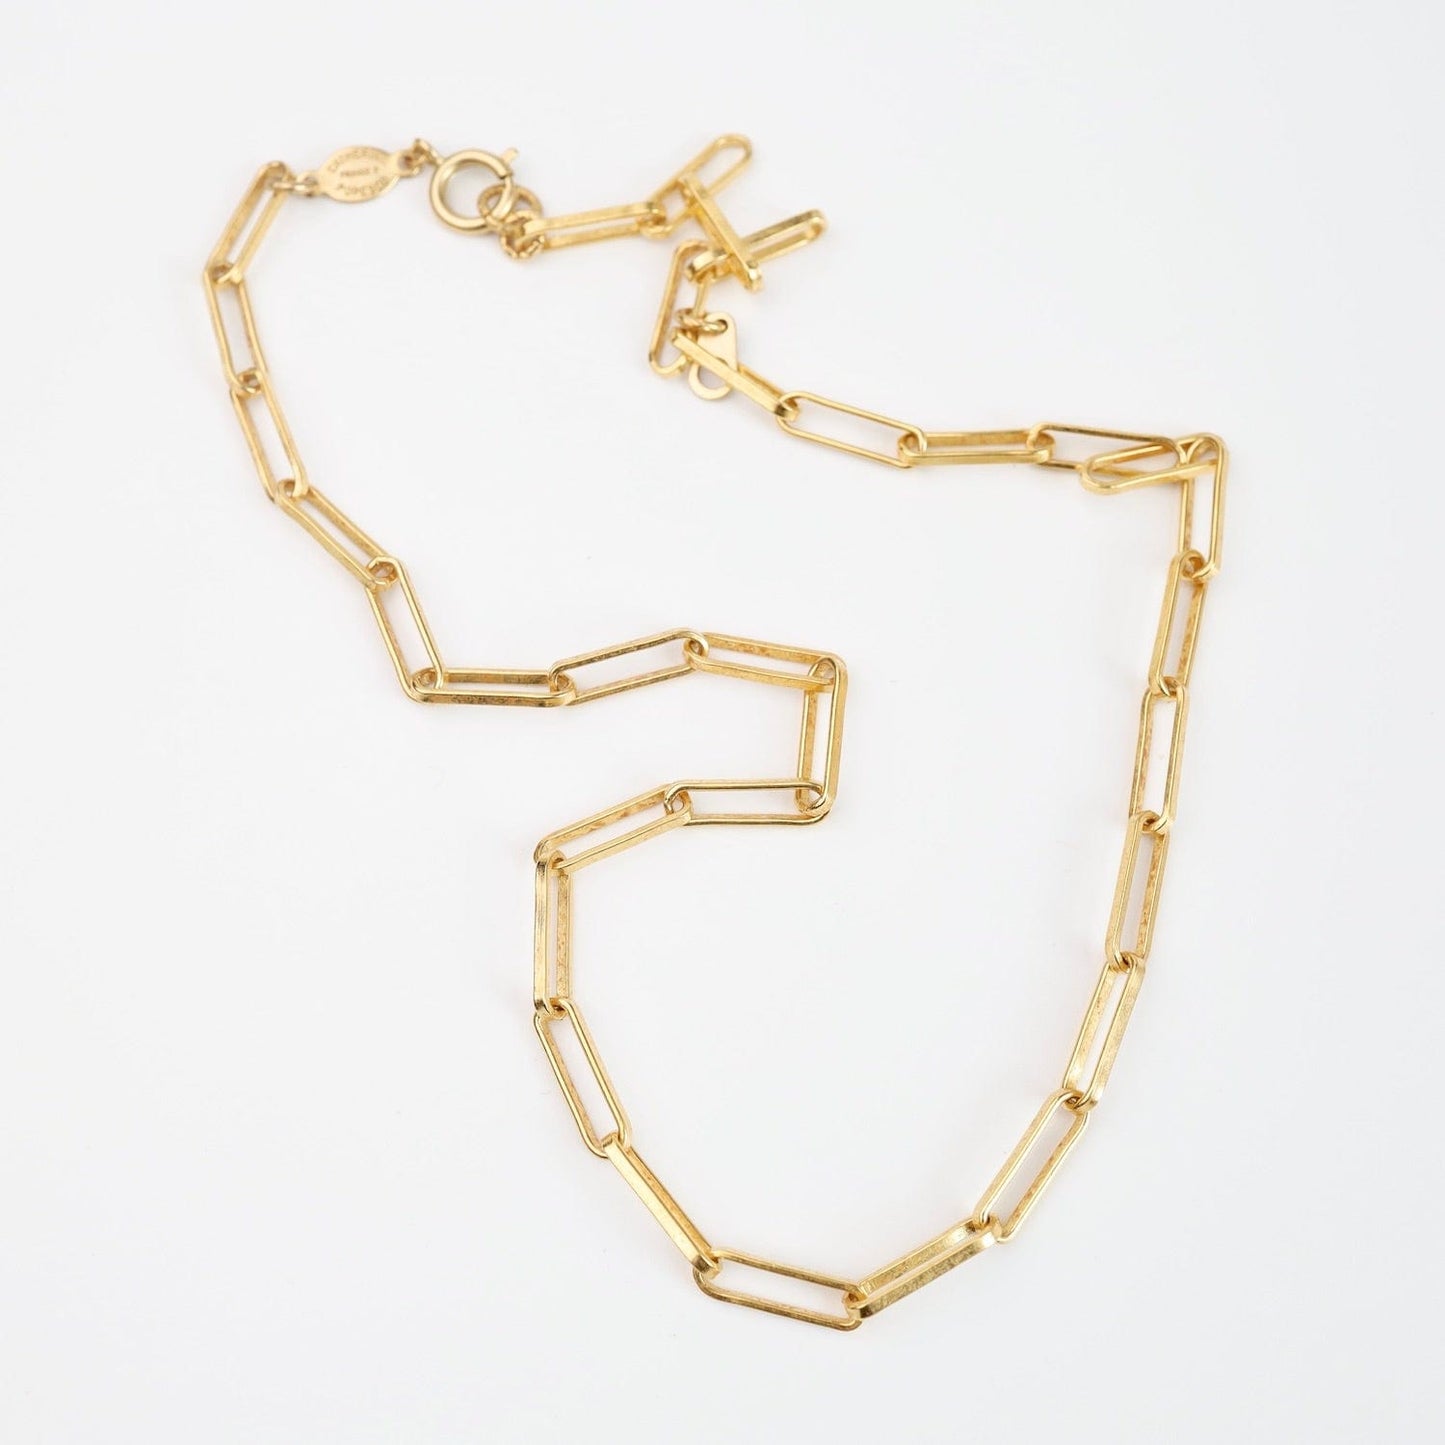 NKL-JM Rectangle Link Necklace - Gold Plate